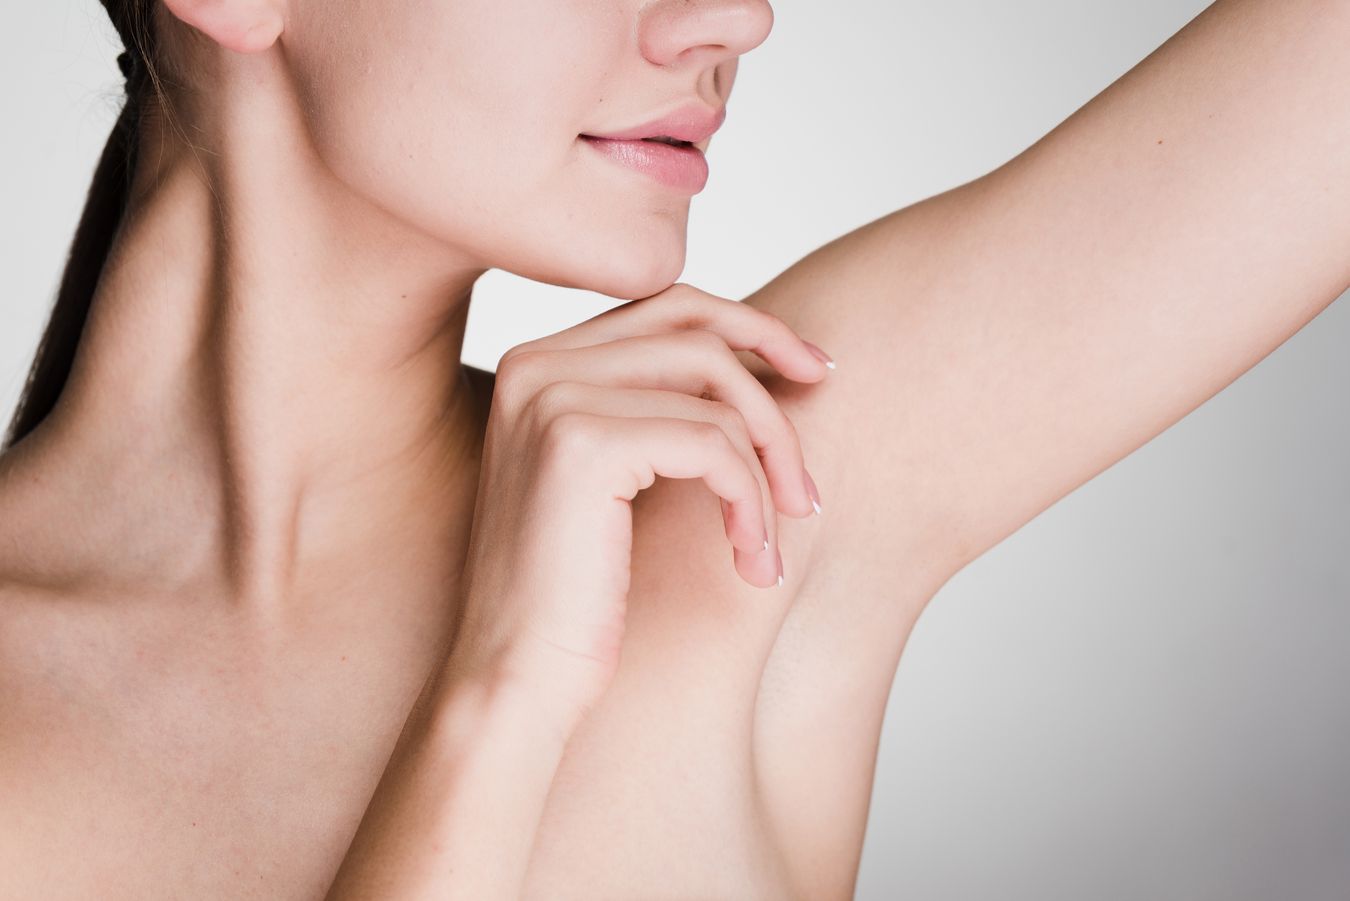 Closeup on woman's armpit